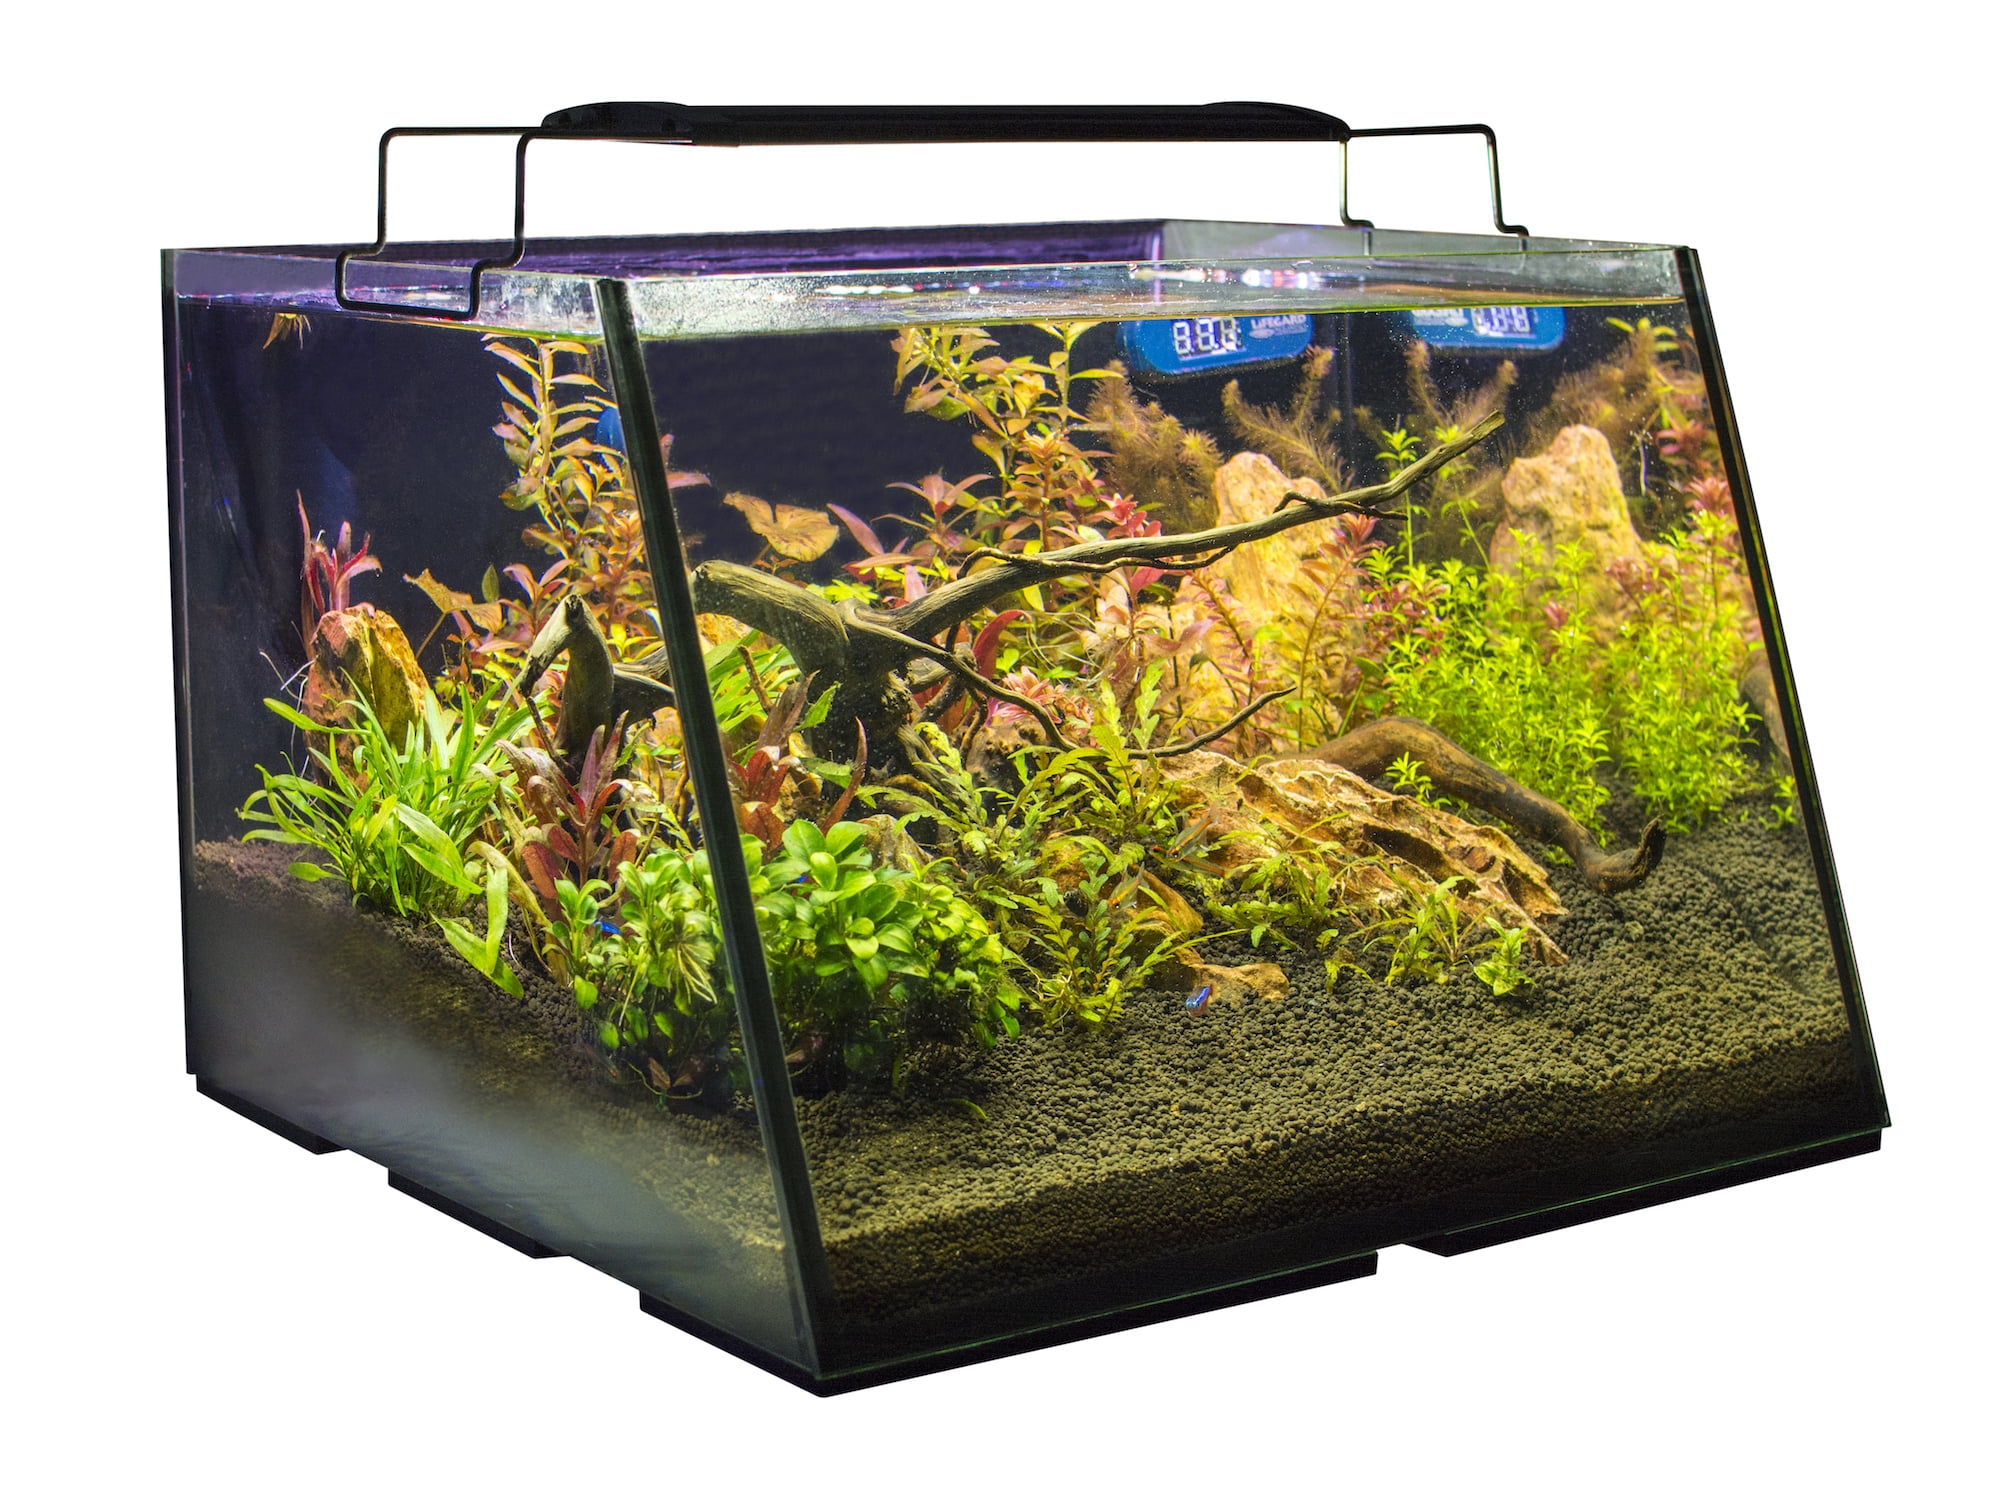 Lifegard FullView 5 Gallon Aquarium with LED Light